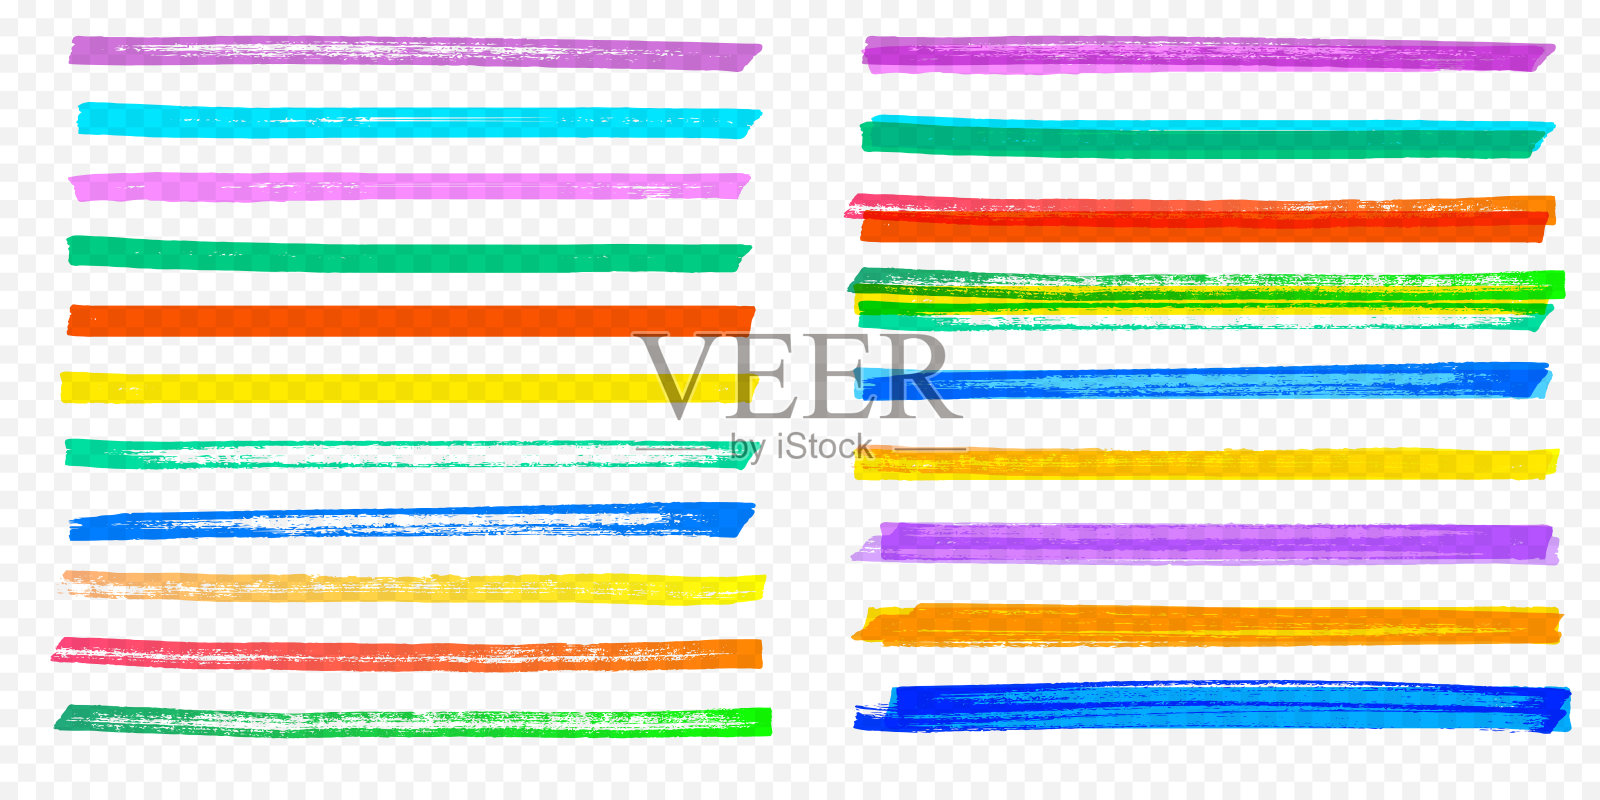 高亮笔刷笔触设置矢量颜色标记笔线透明背景插画图片素材